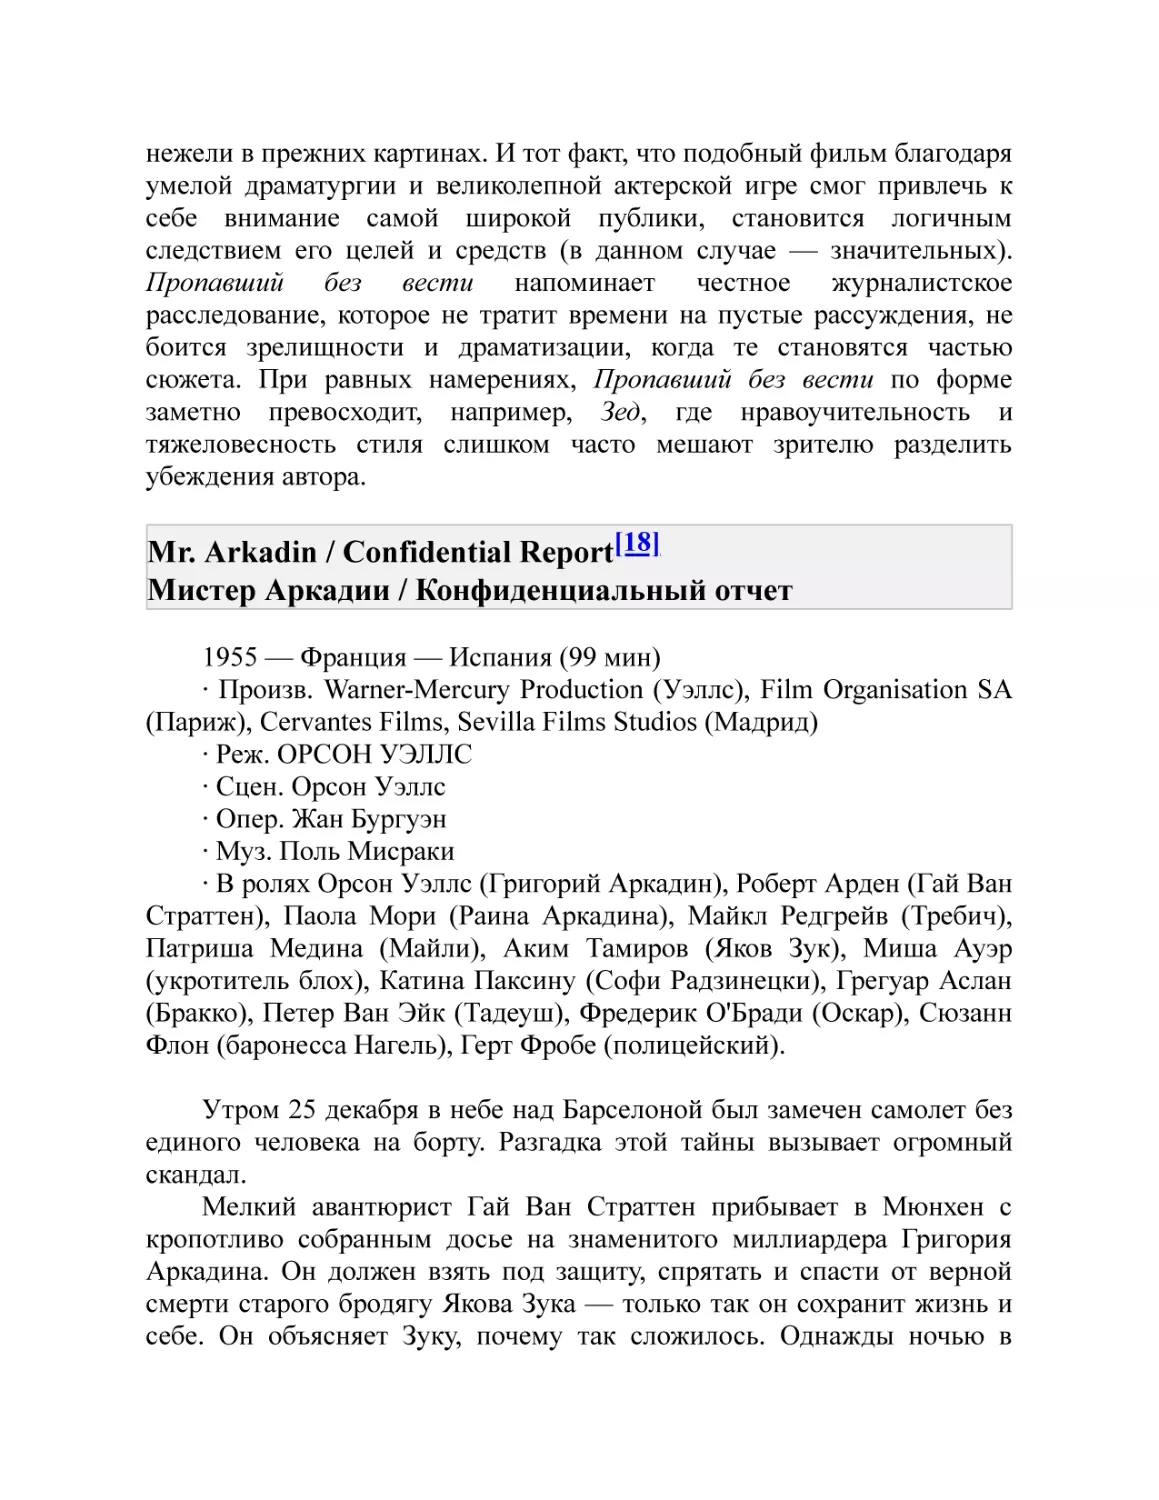 Mr. Arkadin / Confidential Report[18] Мистер Аркадии / Конфиденциальный отчет